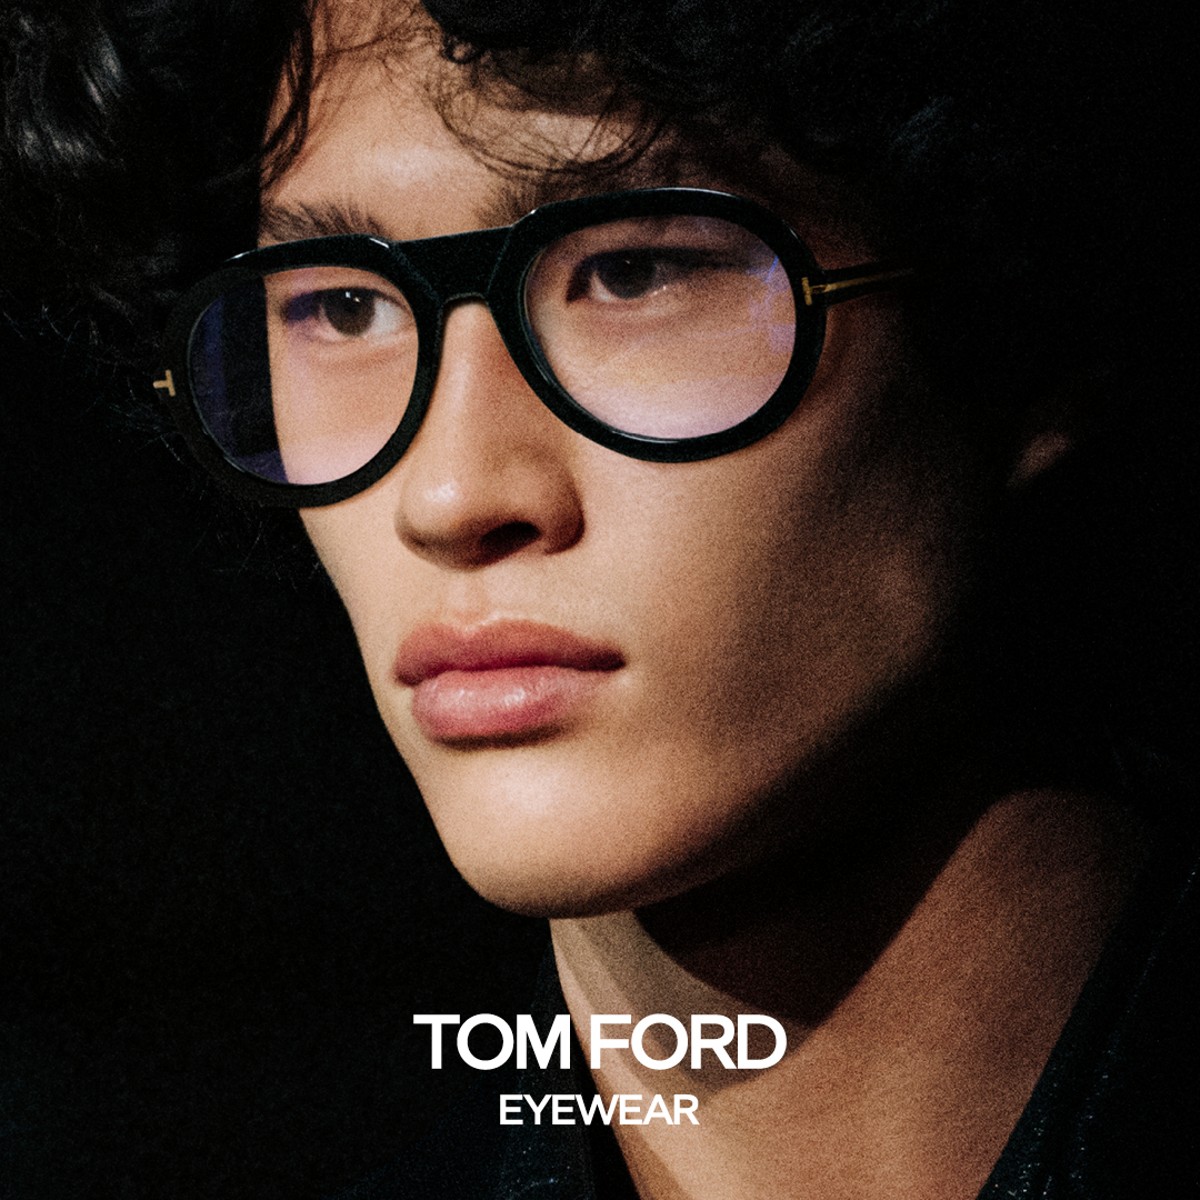 TOM FORD - Explore the Spring/Summer 2021 Eyewear. #TOMFORD #TFEYEWEAR